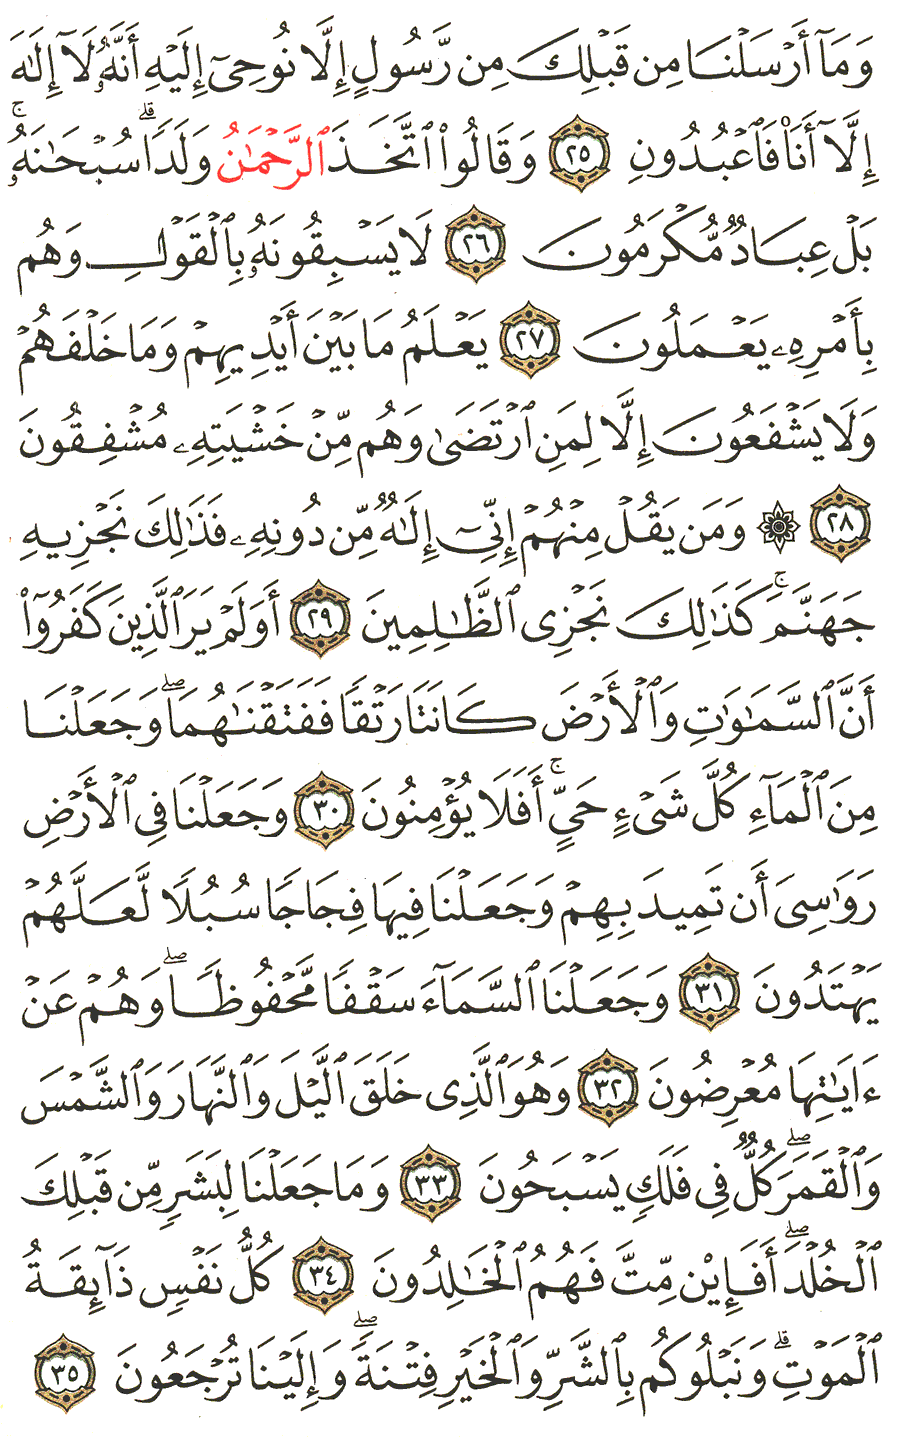 الصفحة رقم 324  من القرآن الكريم مكتوبة من المصحف